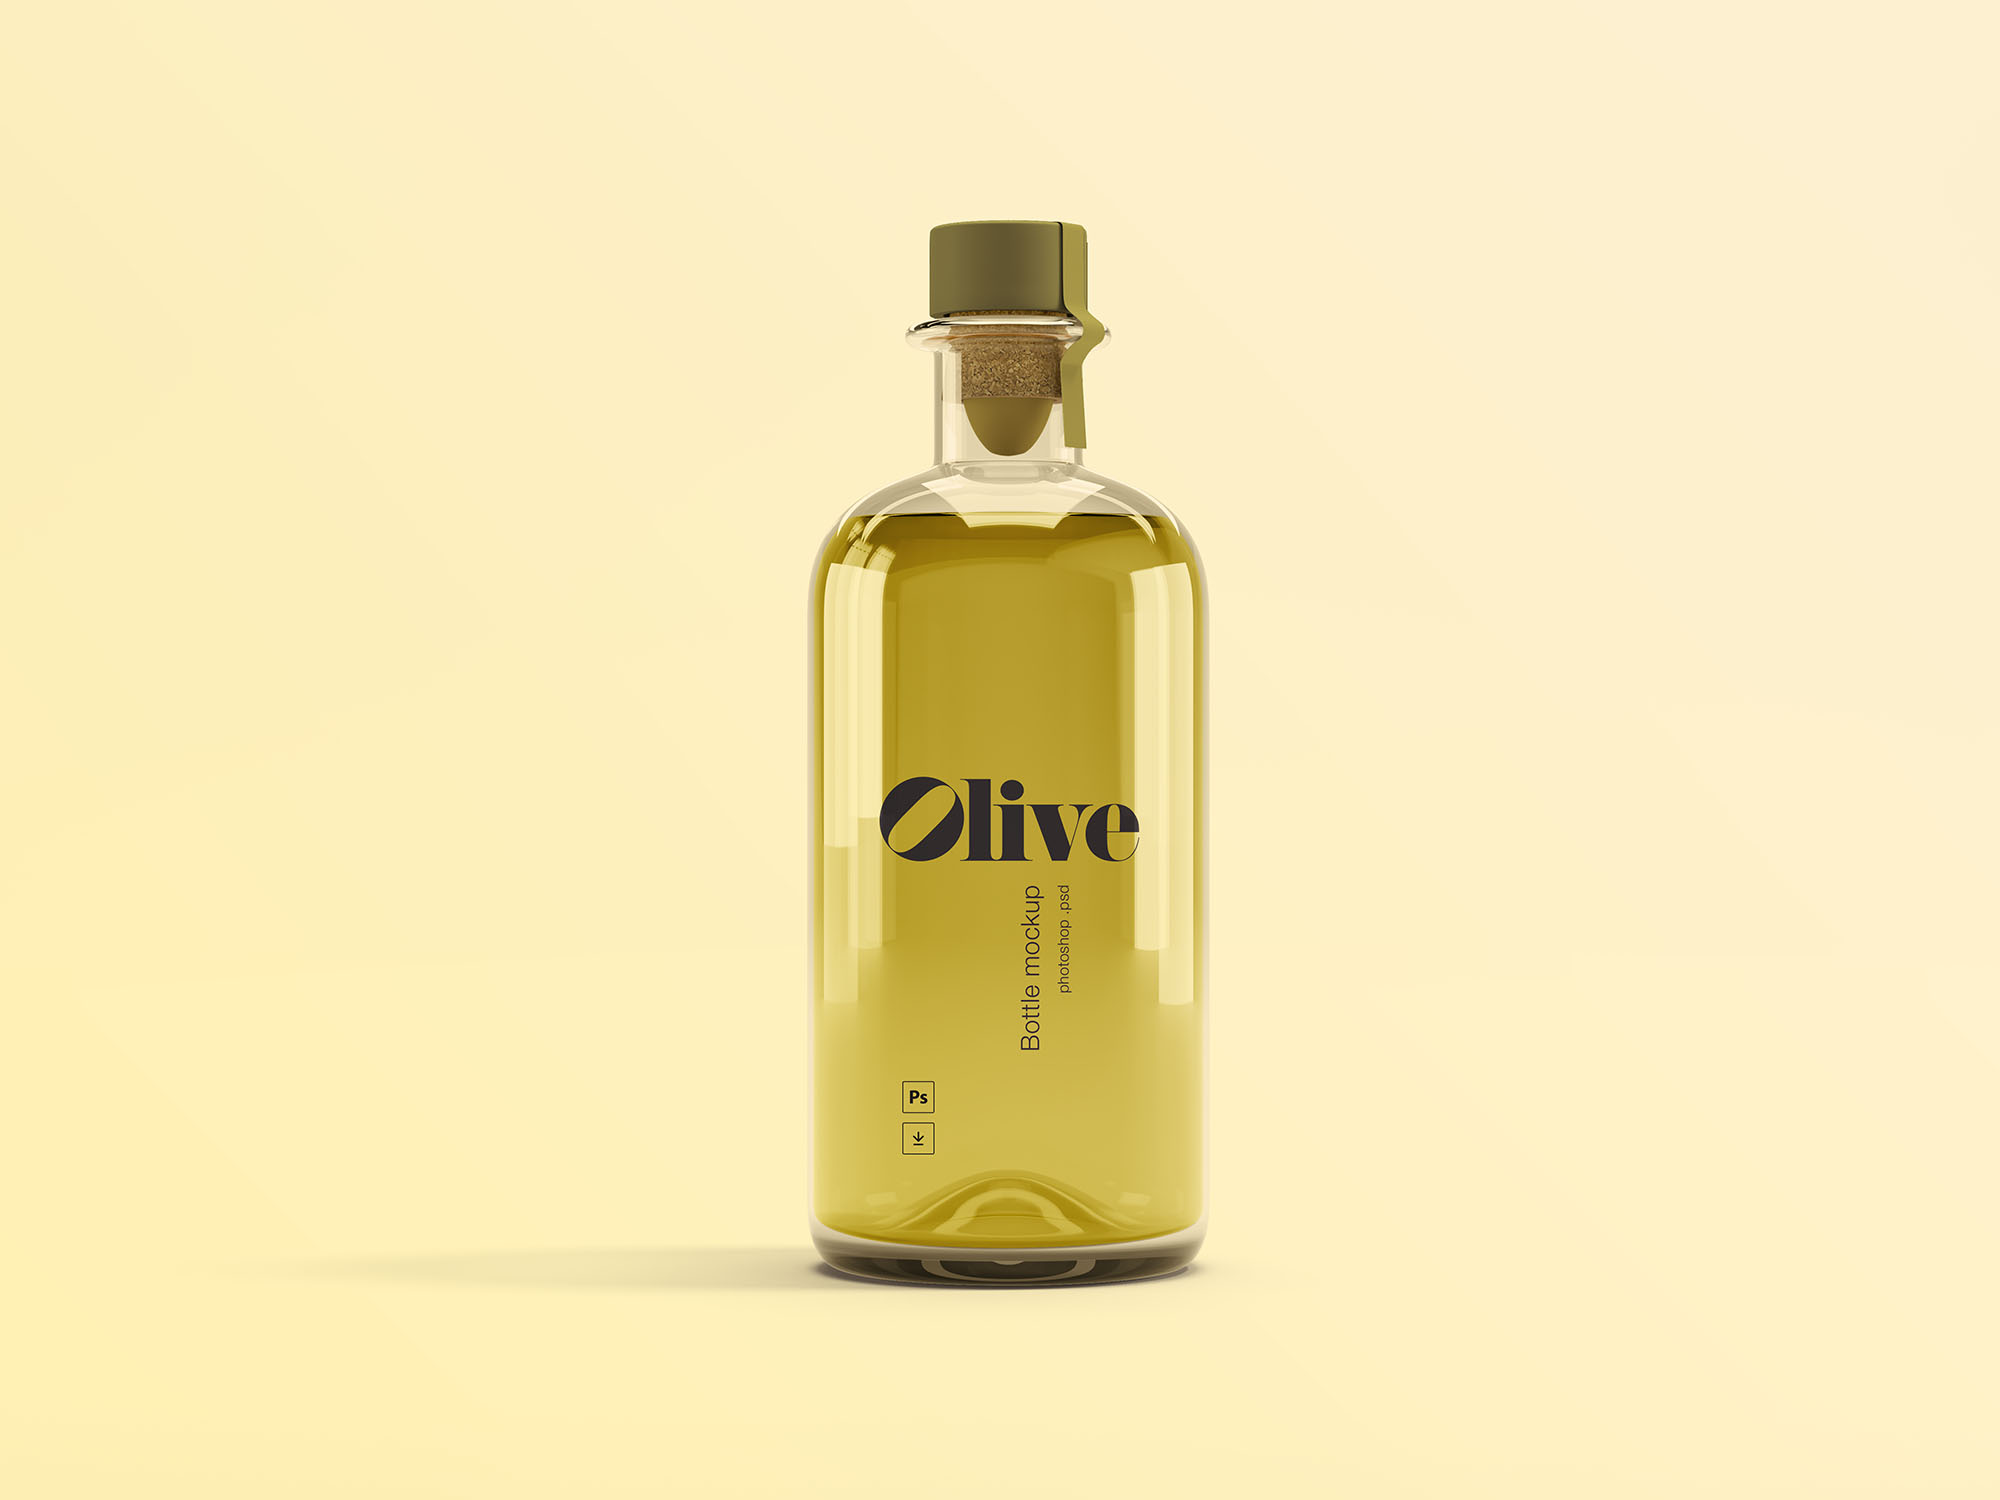 橄榄油瓶玻璃瓶设计效果图样机模板 Olive Oil Bottle Mockup插图